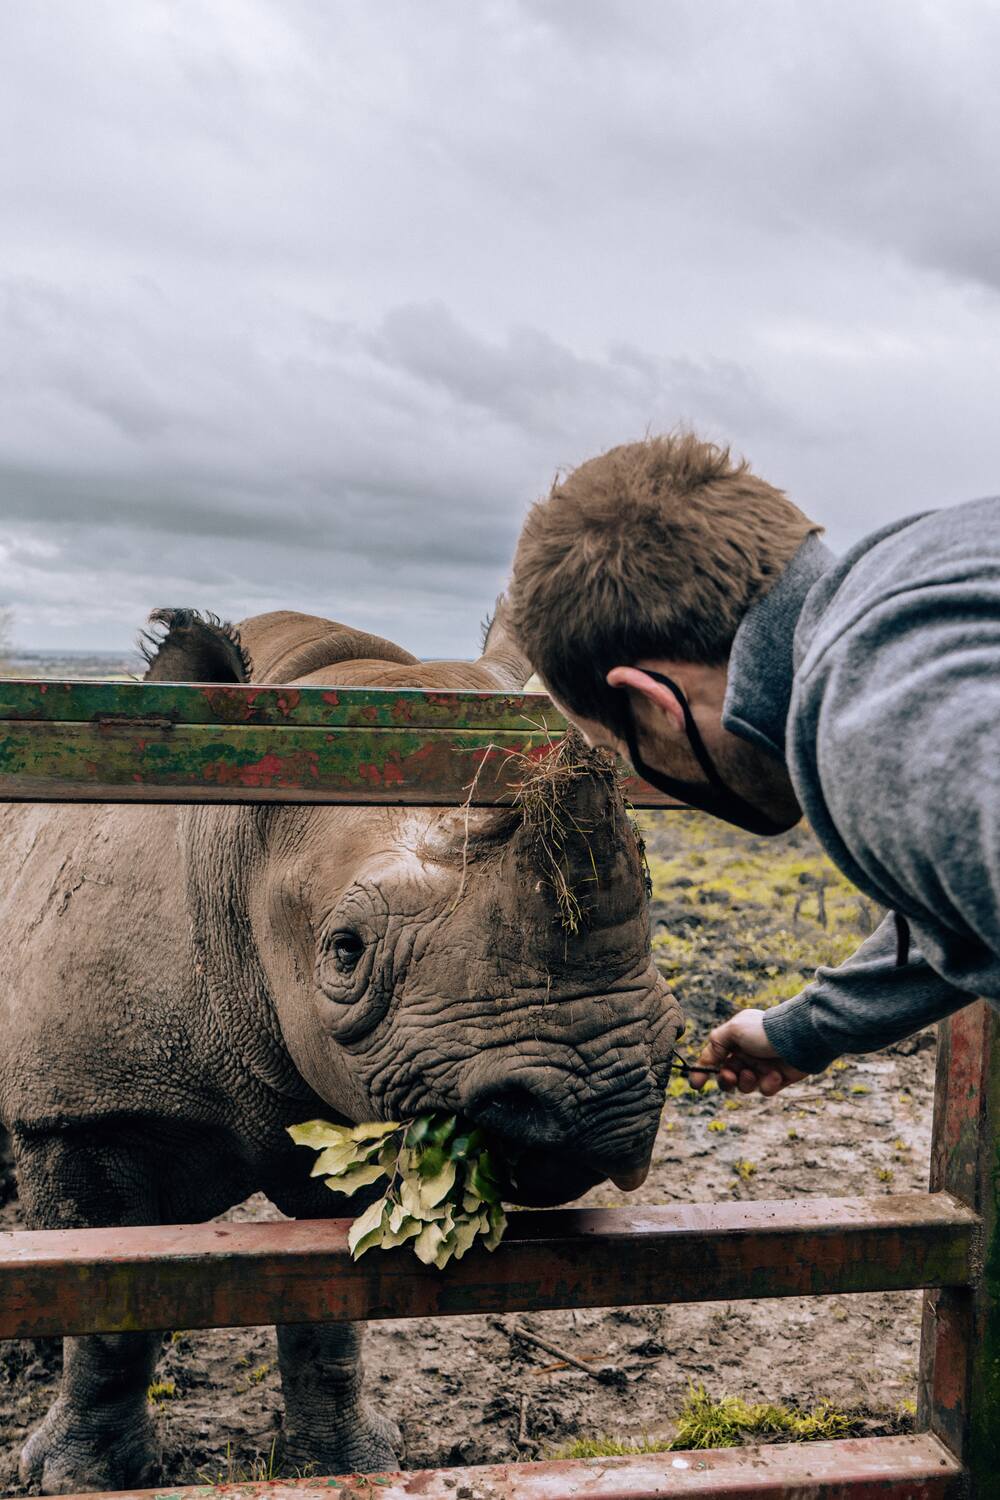 Feeding Rhinos at Port Lympne